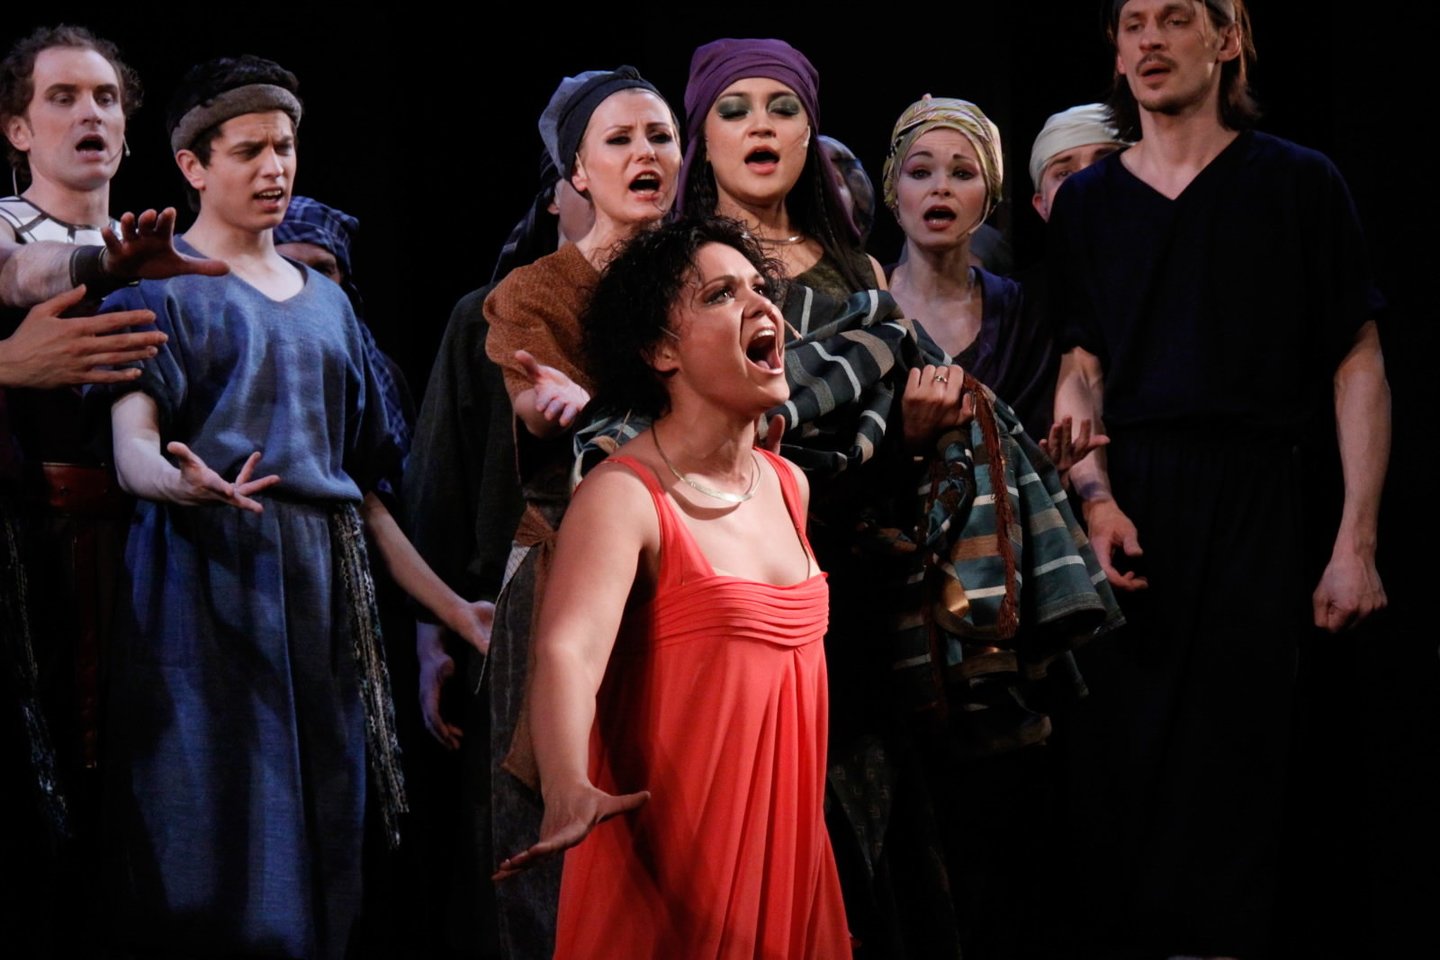  Spektaklio „Aida“ akimirka.<br> Nuotr. iš Kauno valstybinio muzikinio teatro archyvo.